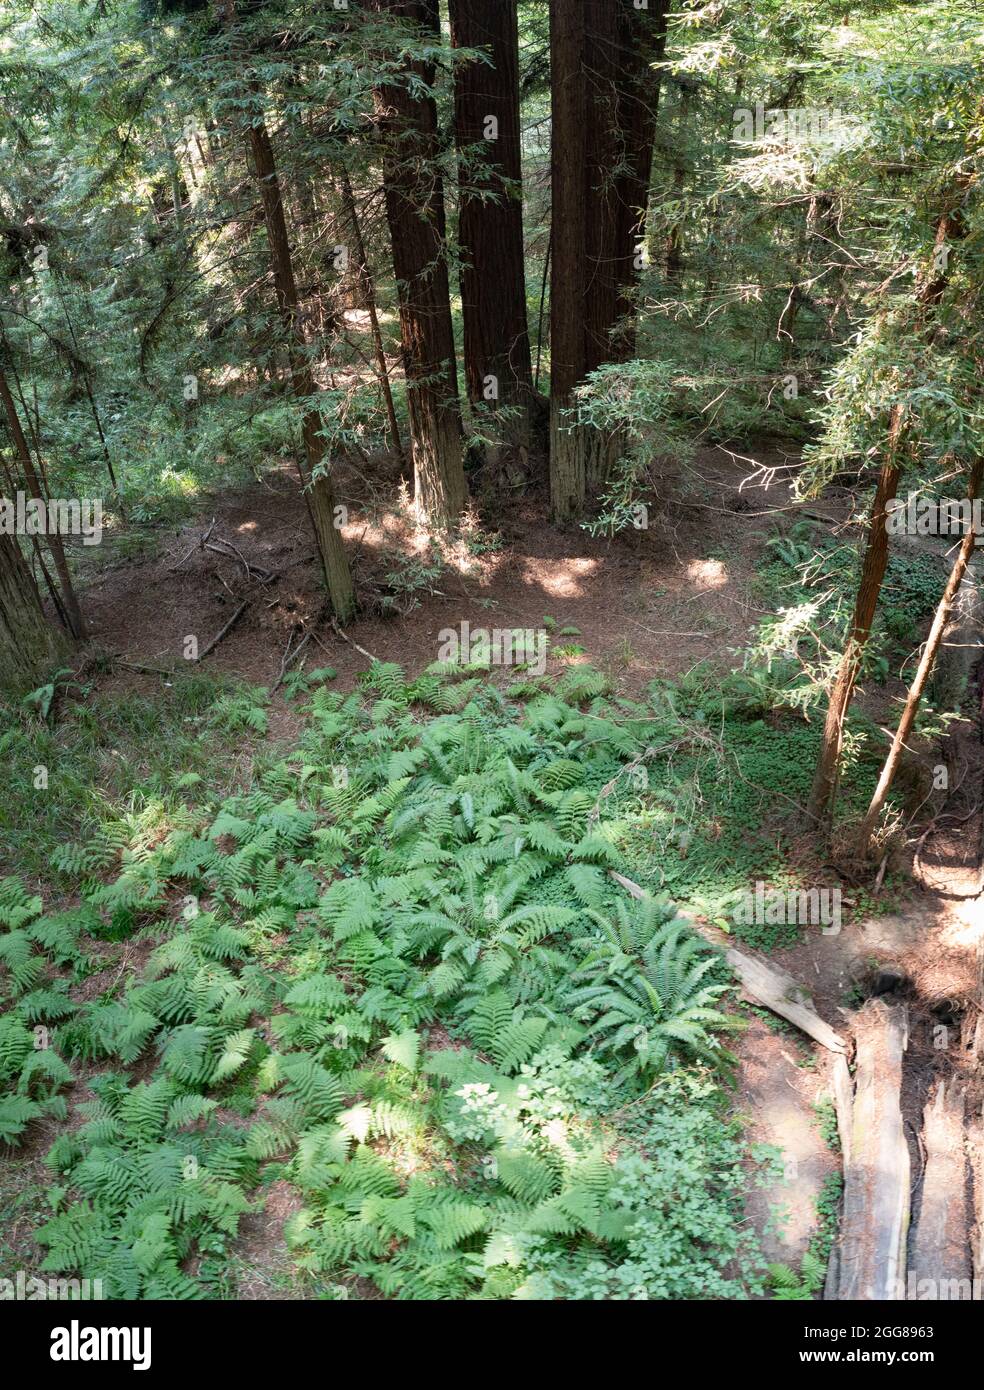 Le sequoie costiere crescono in una foresta sana nella contea di Mendocino, California settentrionale. Questa regione ospita gli ultimi grandi stand di questi alberi. Foto Stock